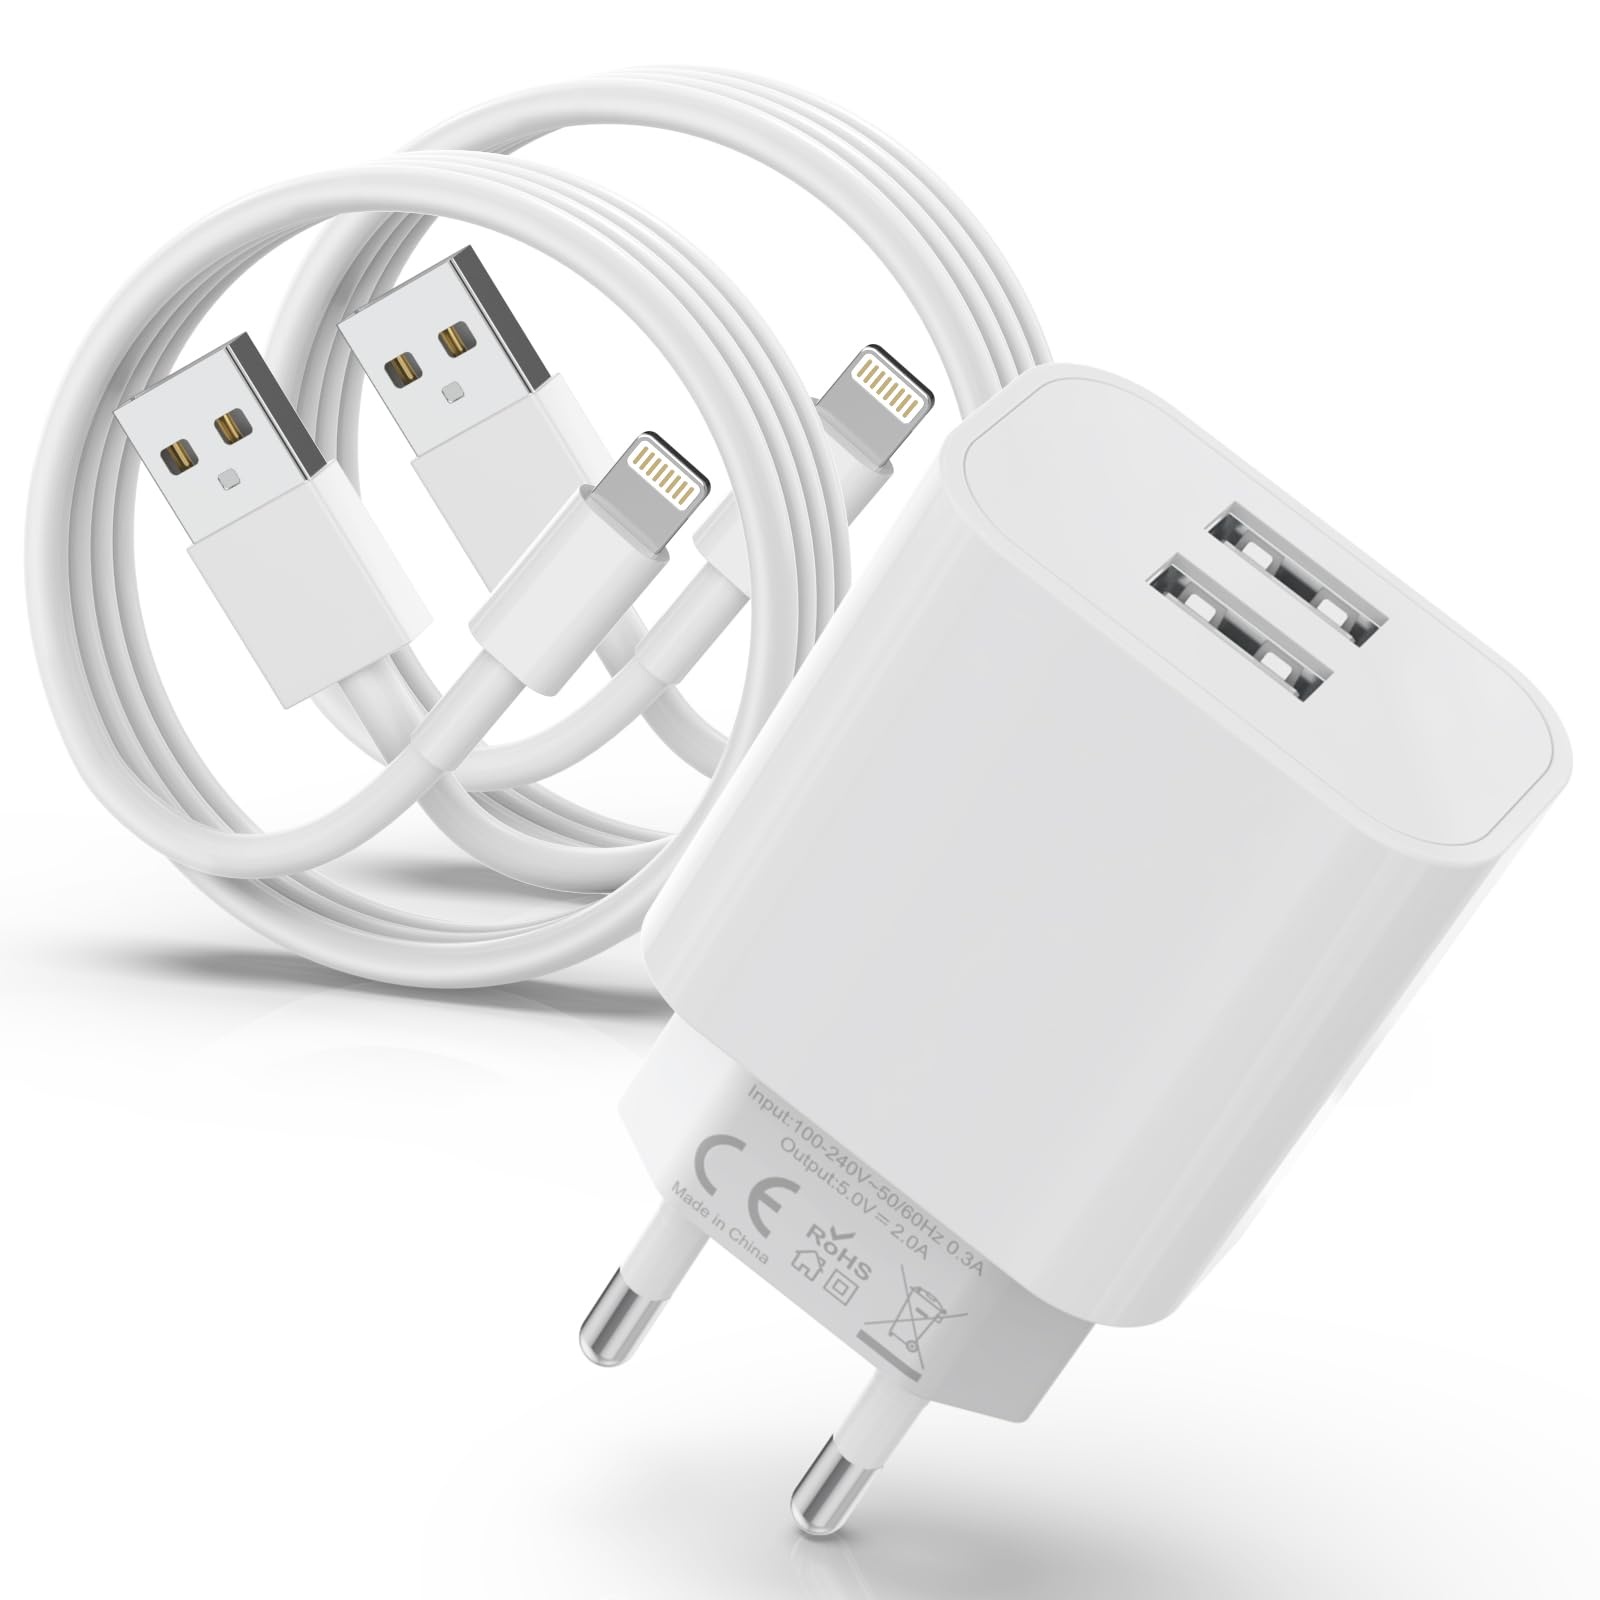 Apple MFi Certified 2Port USB iPhone Ladegerät mit 2er Pack iPhone Ladekabel 2M,iPhone Ladegerät Stecker, USB Netzteil und Lightning Kabel für iPhone 14/13/12/11 Pro/XS/XR/SE/X/8/iPad Airpods-Weiß